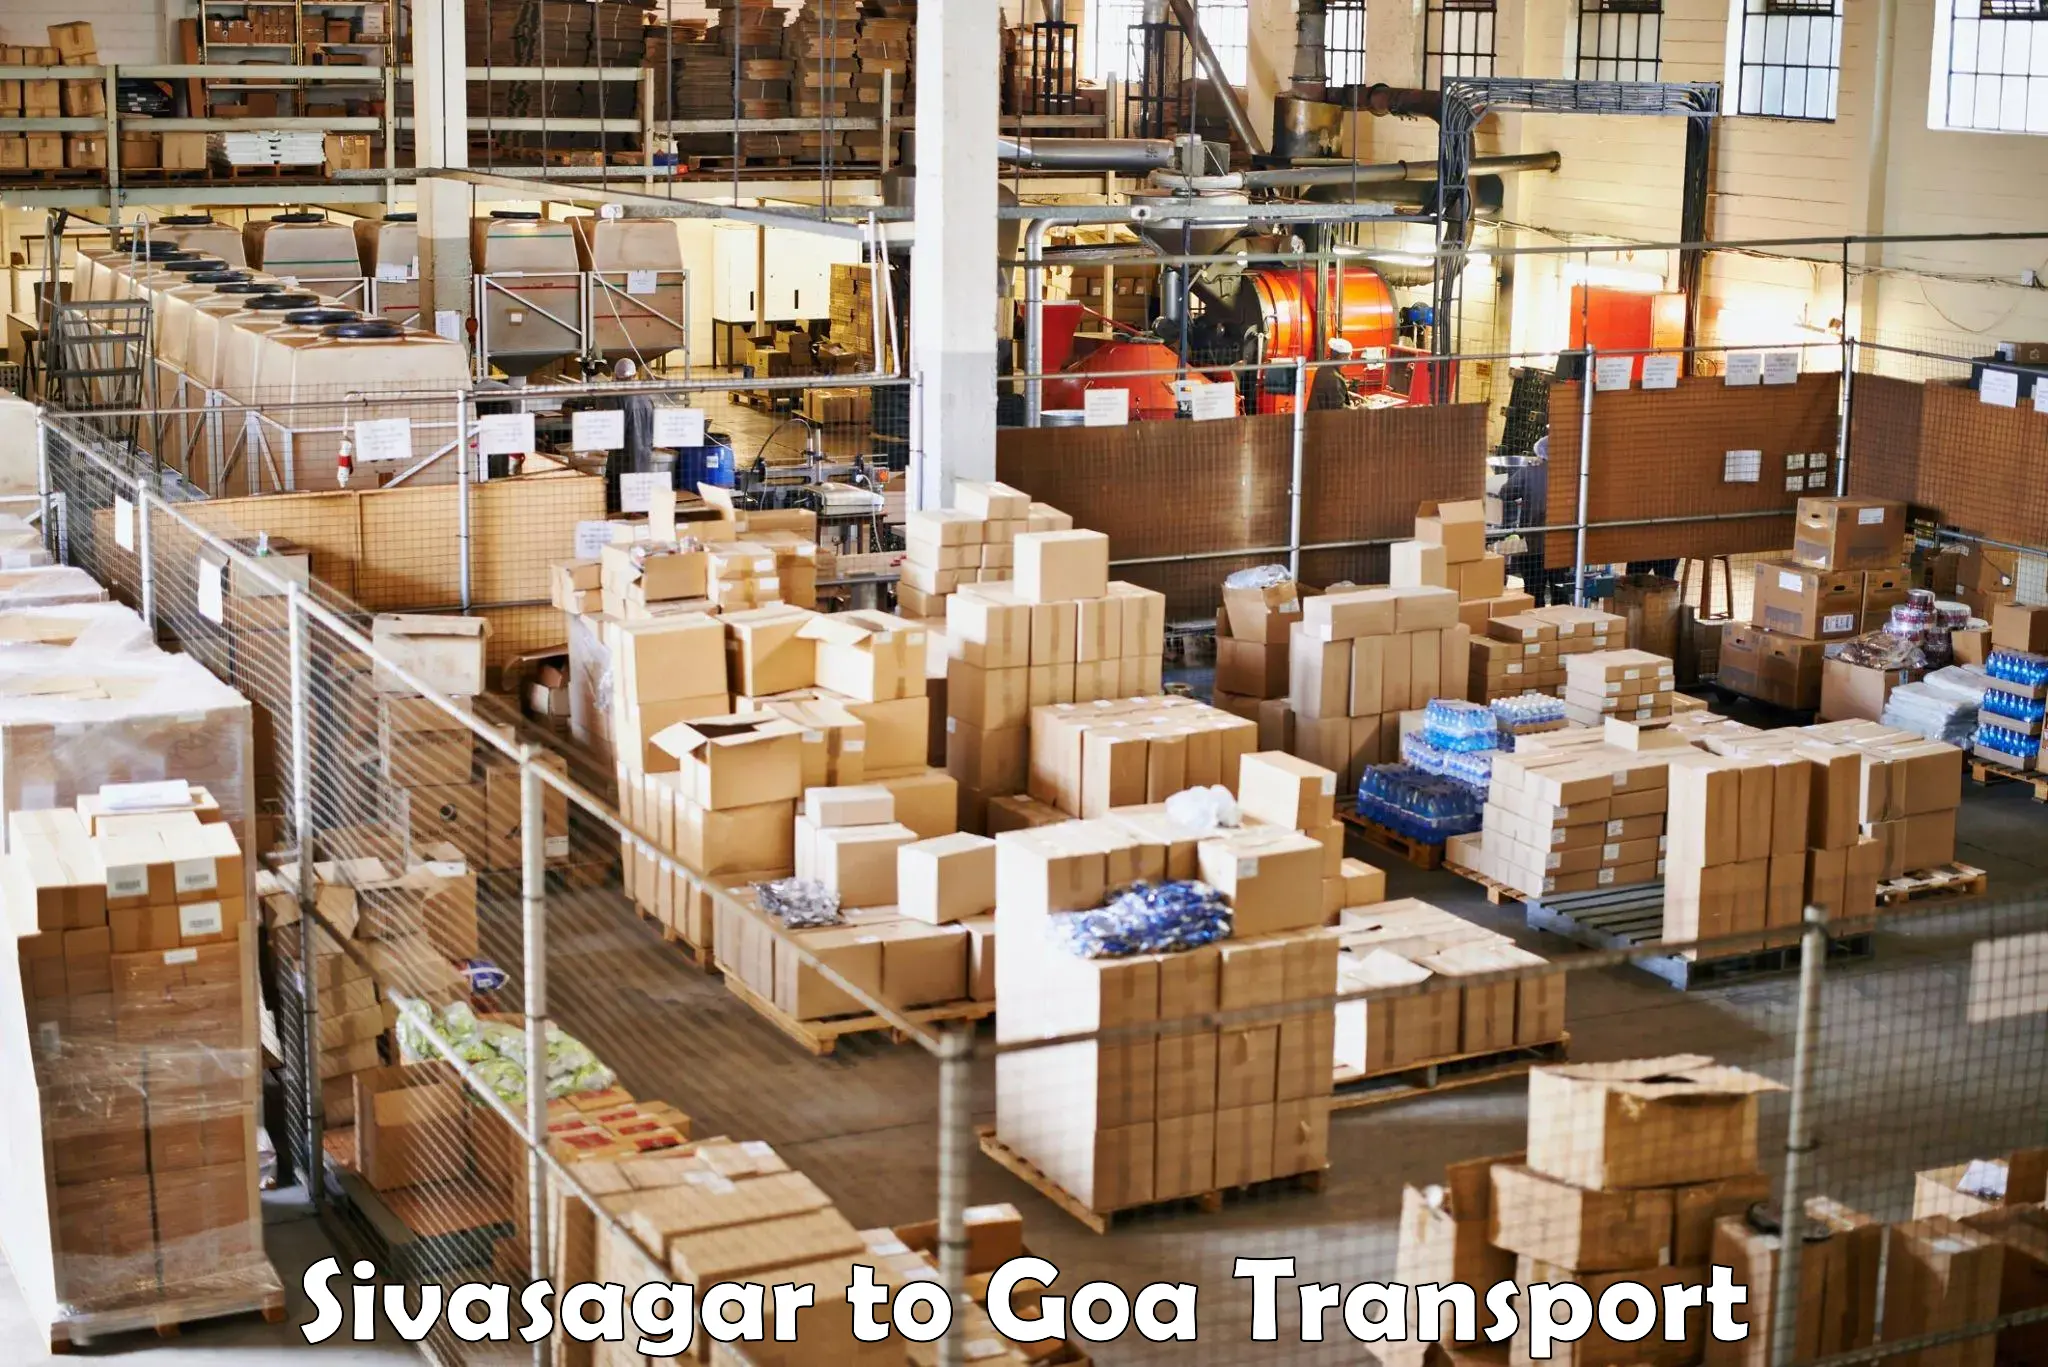 Daily parcel service transport Sivasagar to Panjim